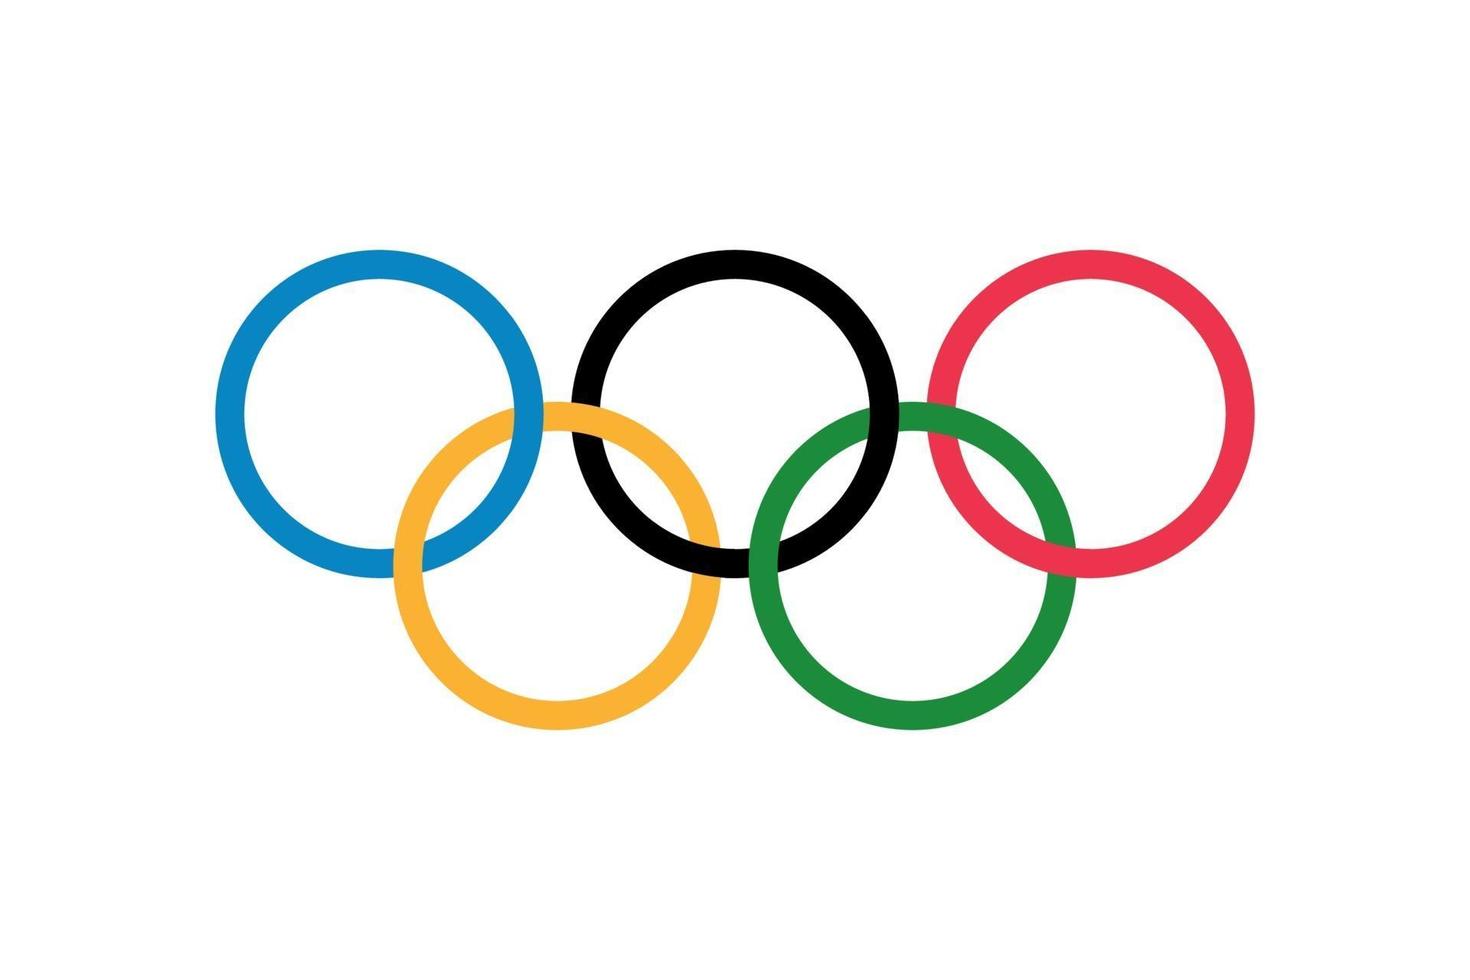 olympische vlag, vijf ringen op de witte achtergrond. vector